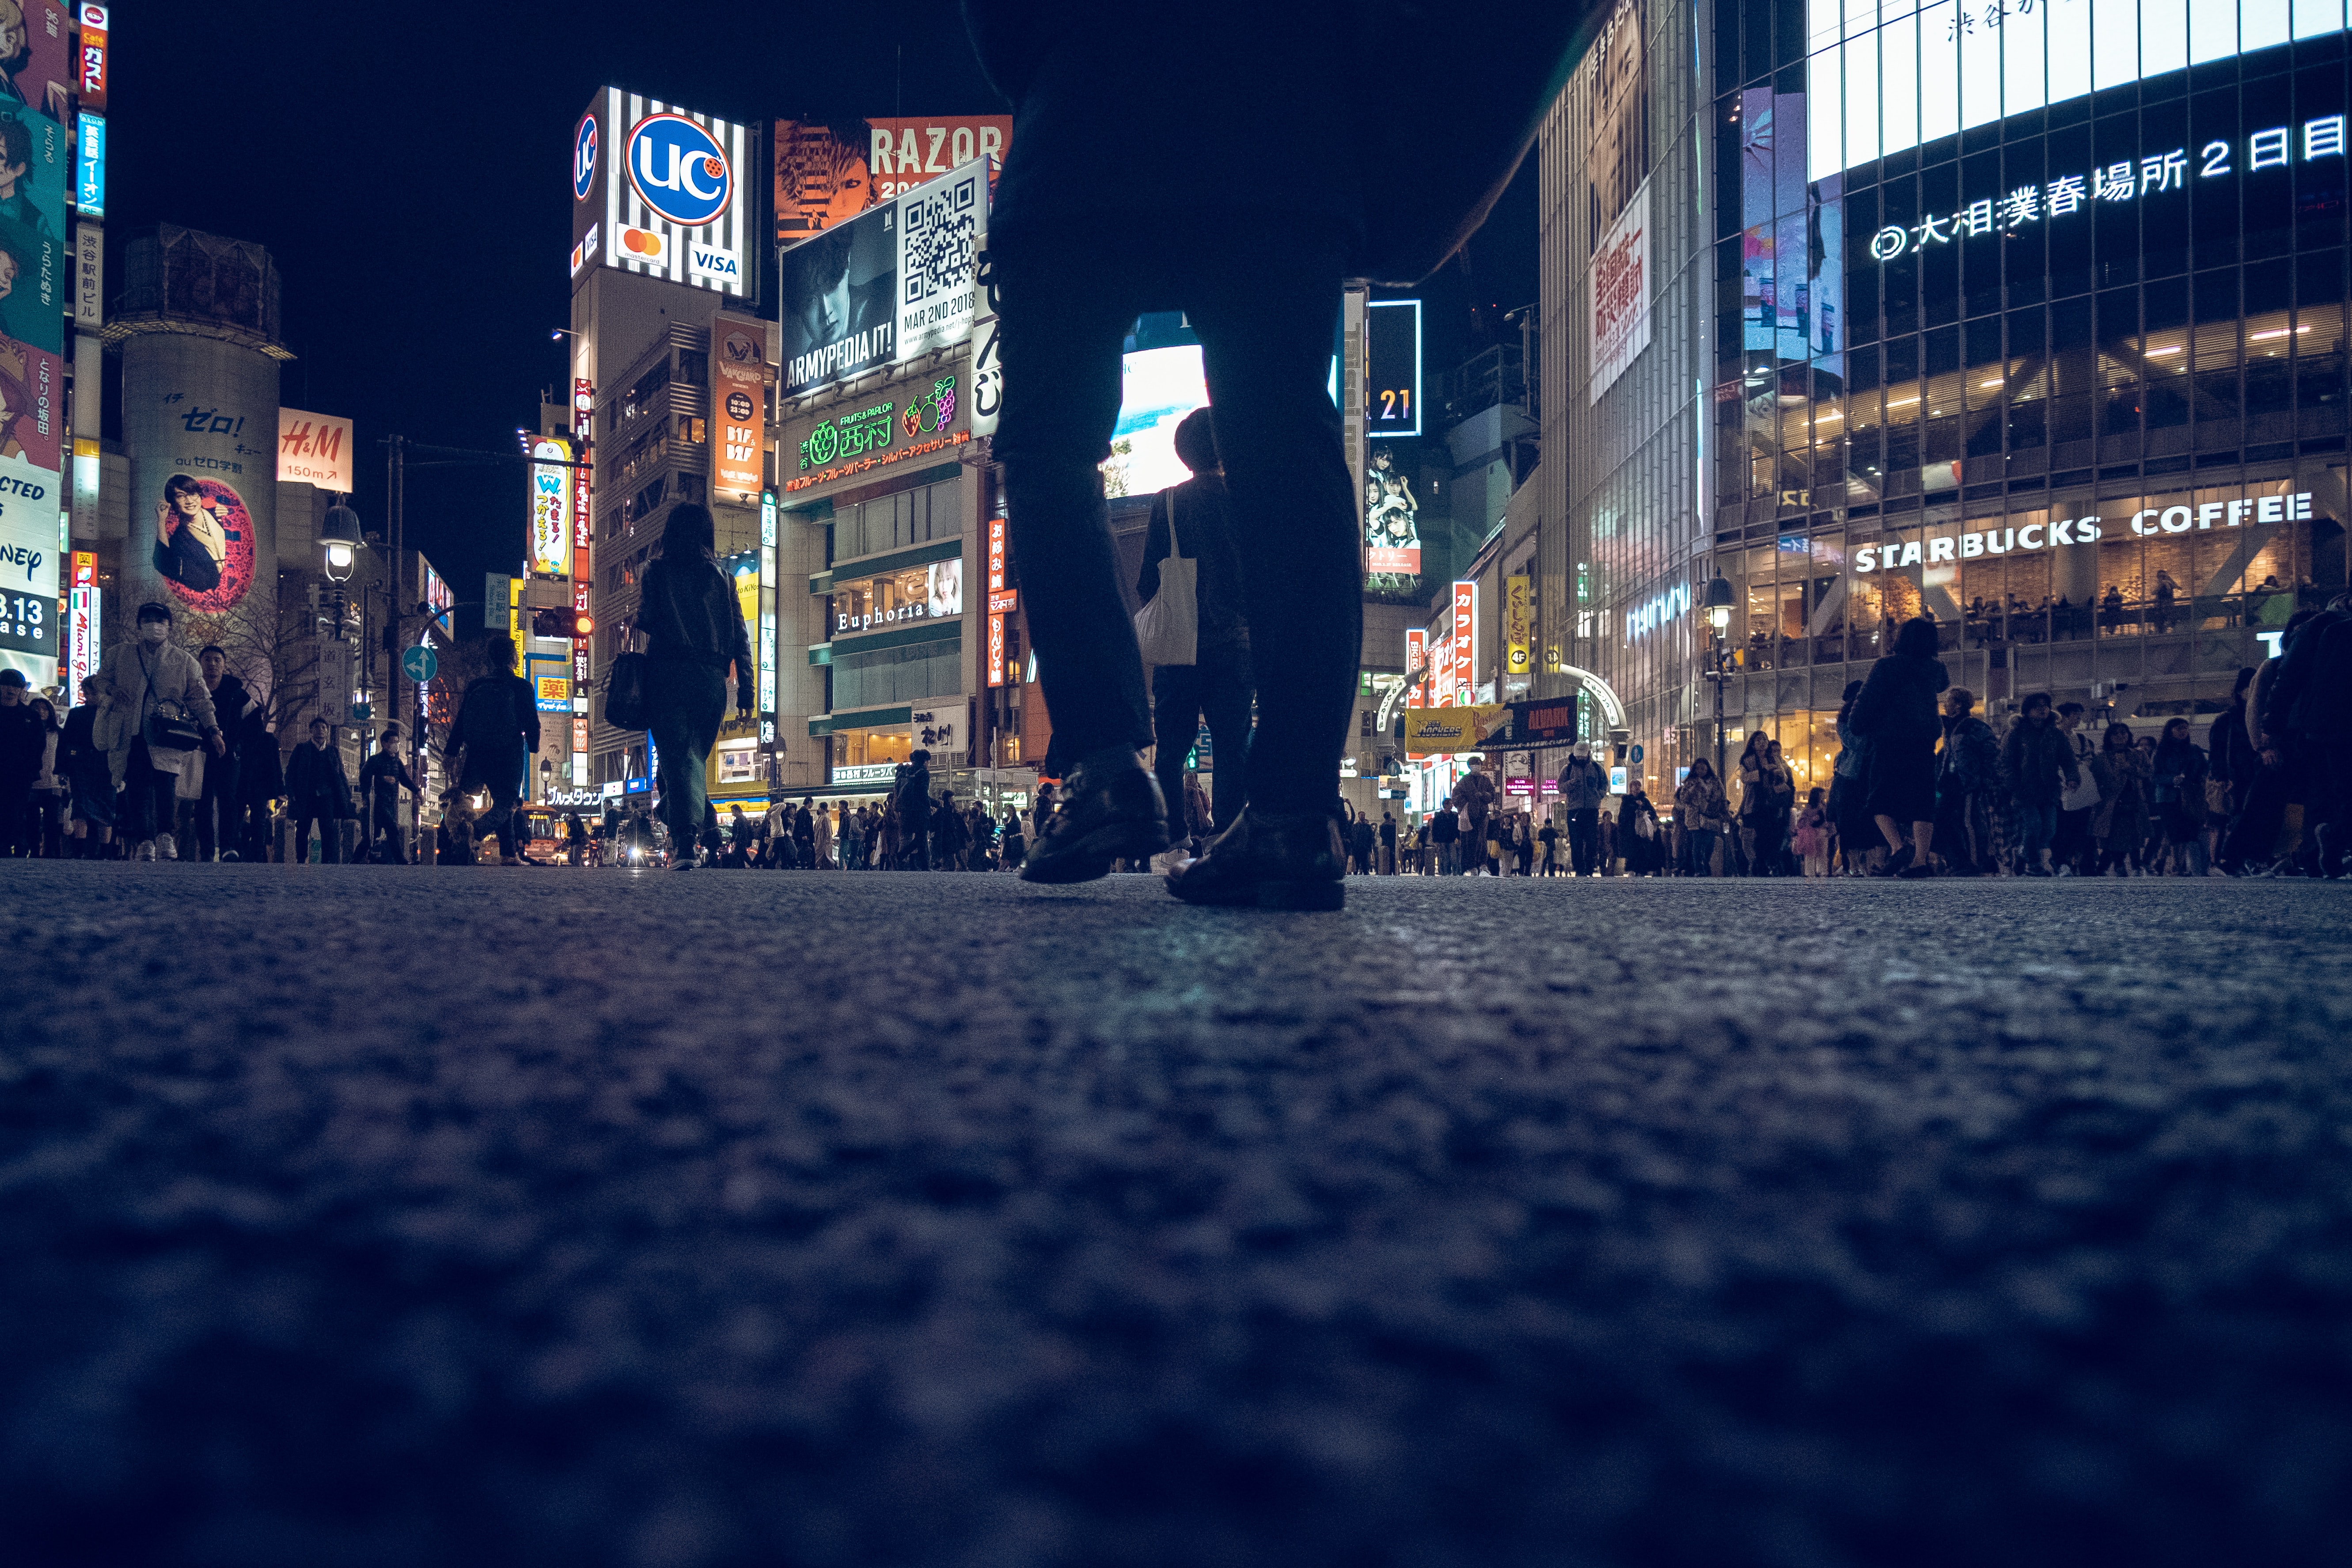 Füßgänger in einer belebten Stadt voller beleuchteter Werbetafeln bei Nacht